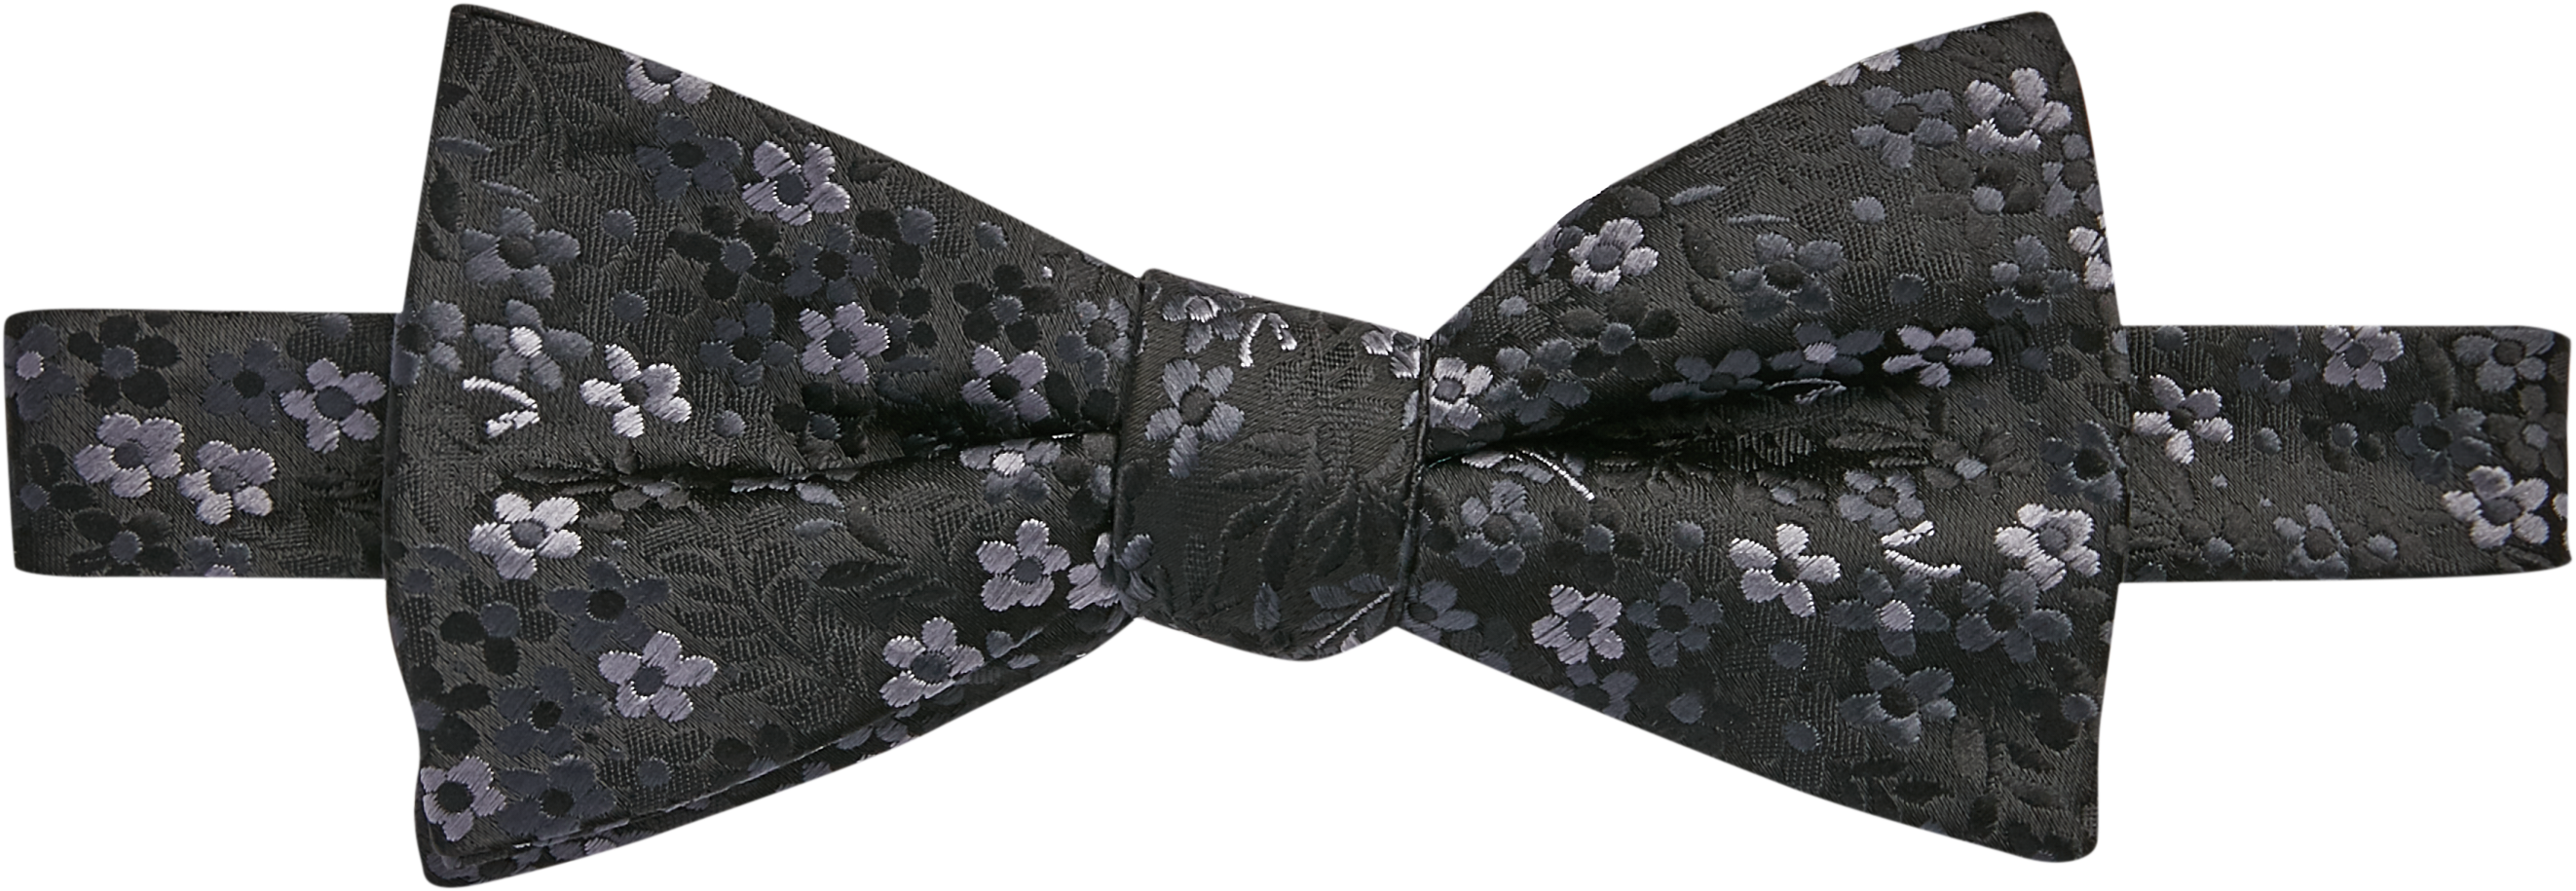 Pre-Tied Floral Bow Tie